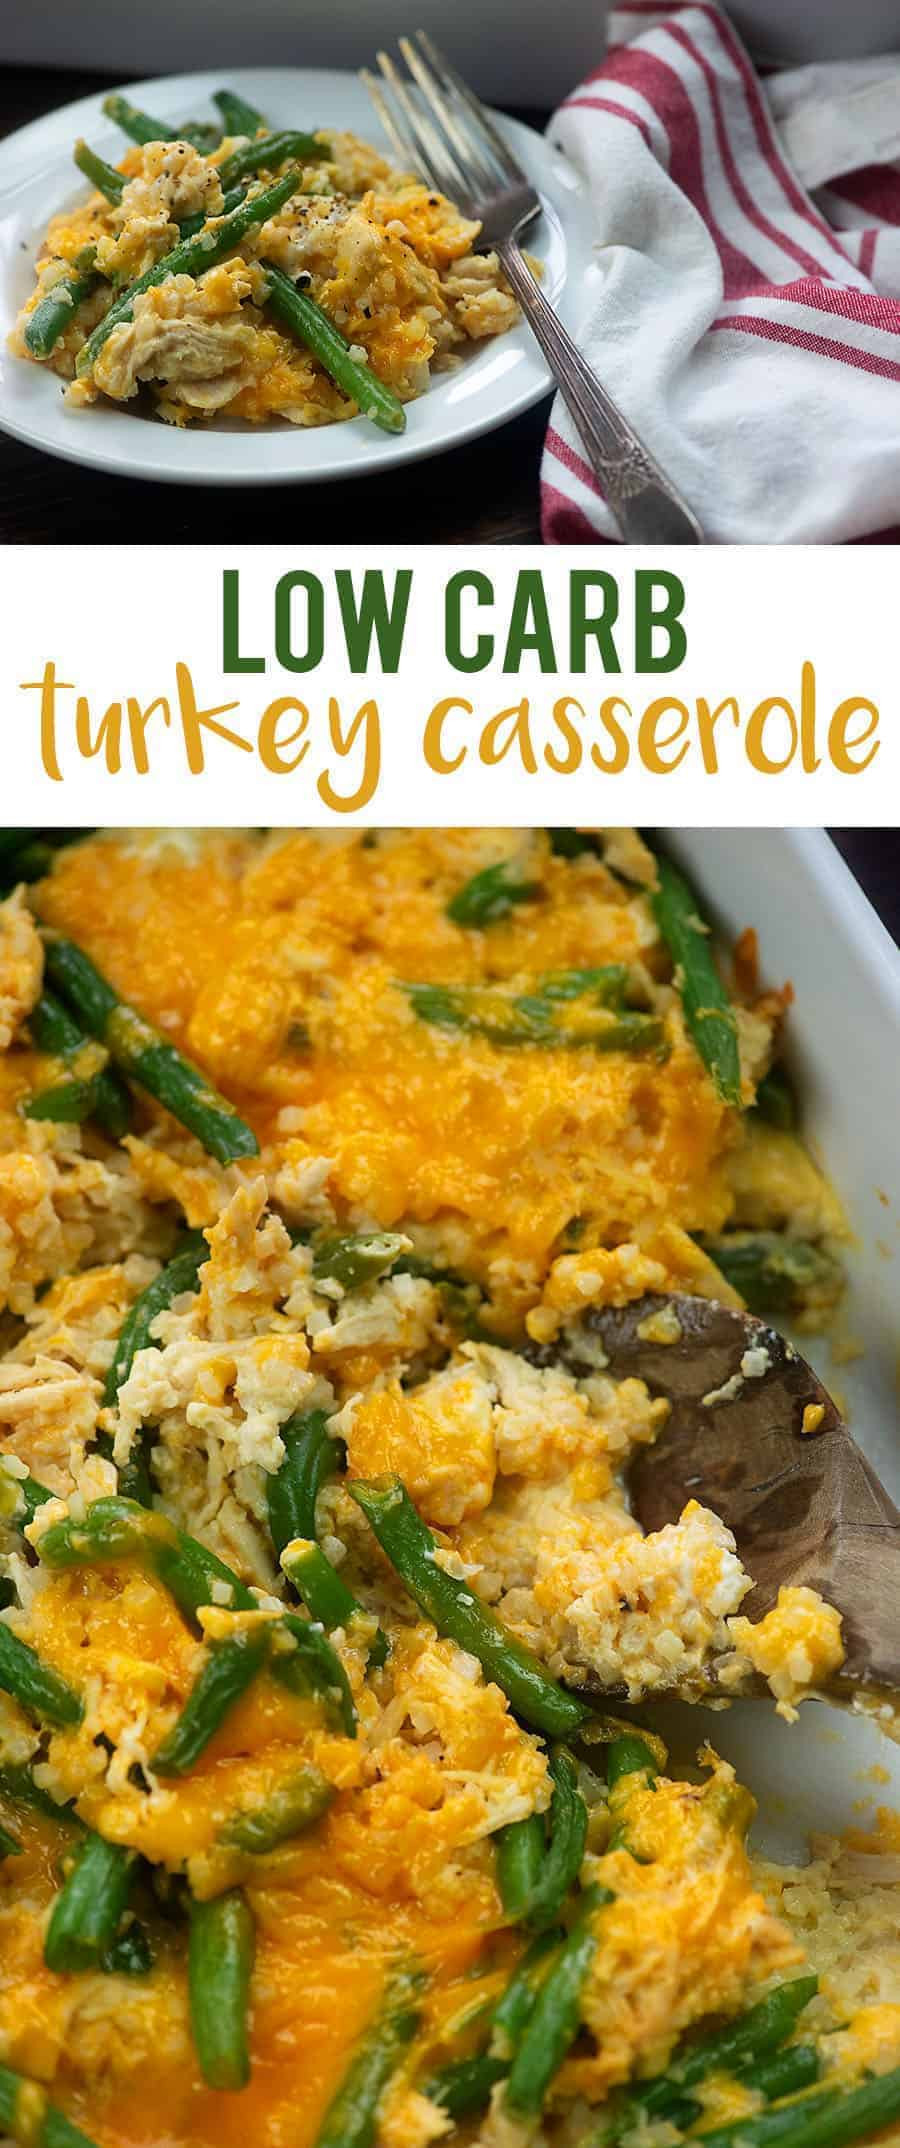 Low Carb Turkey Casserole
 Leftover Turkey Casserole